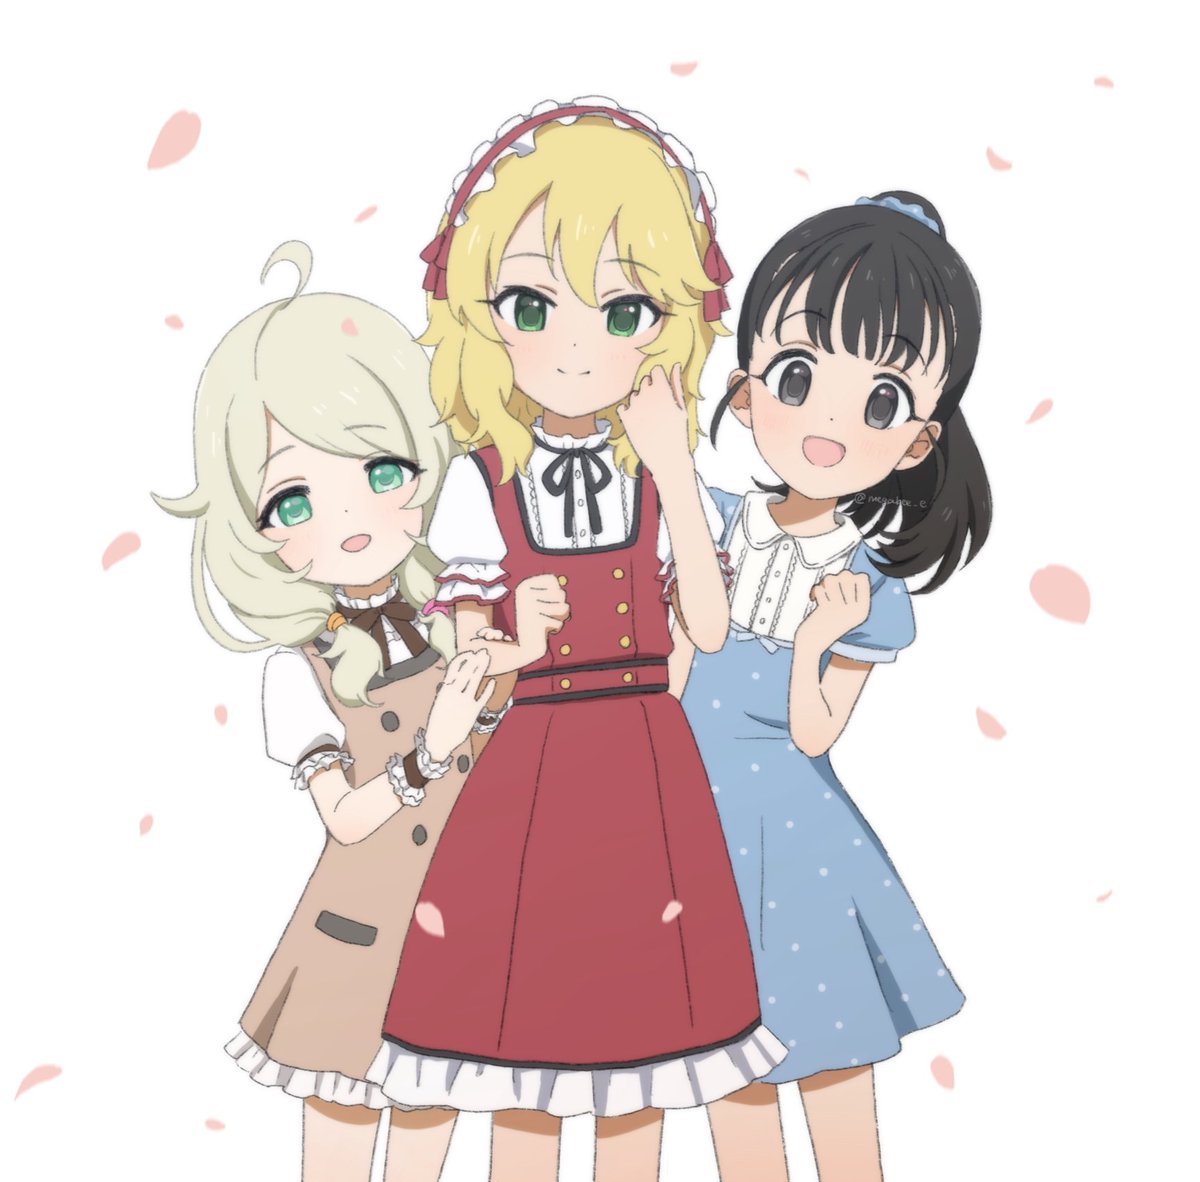 sakurai momoka ,yusa kozue multiple girls blonde hair 3girls dress green eyes black hair blue dress  illustration images